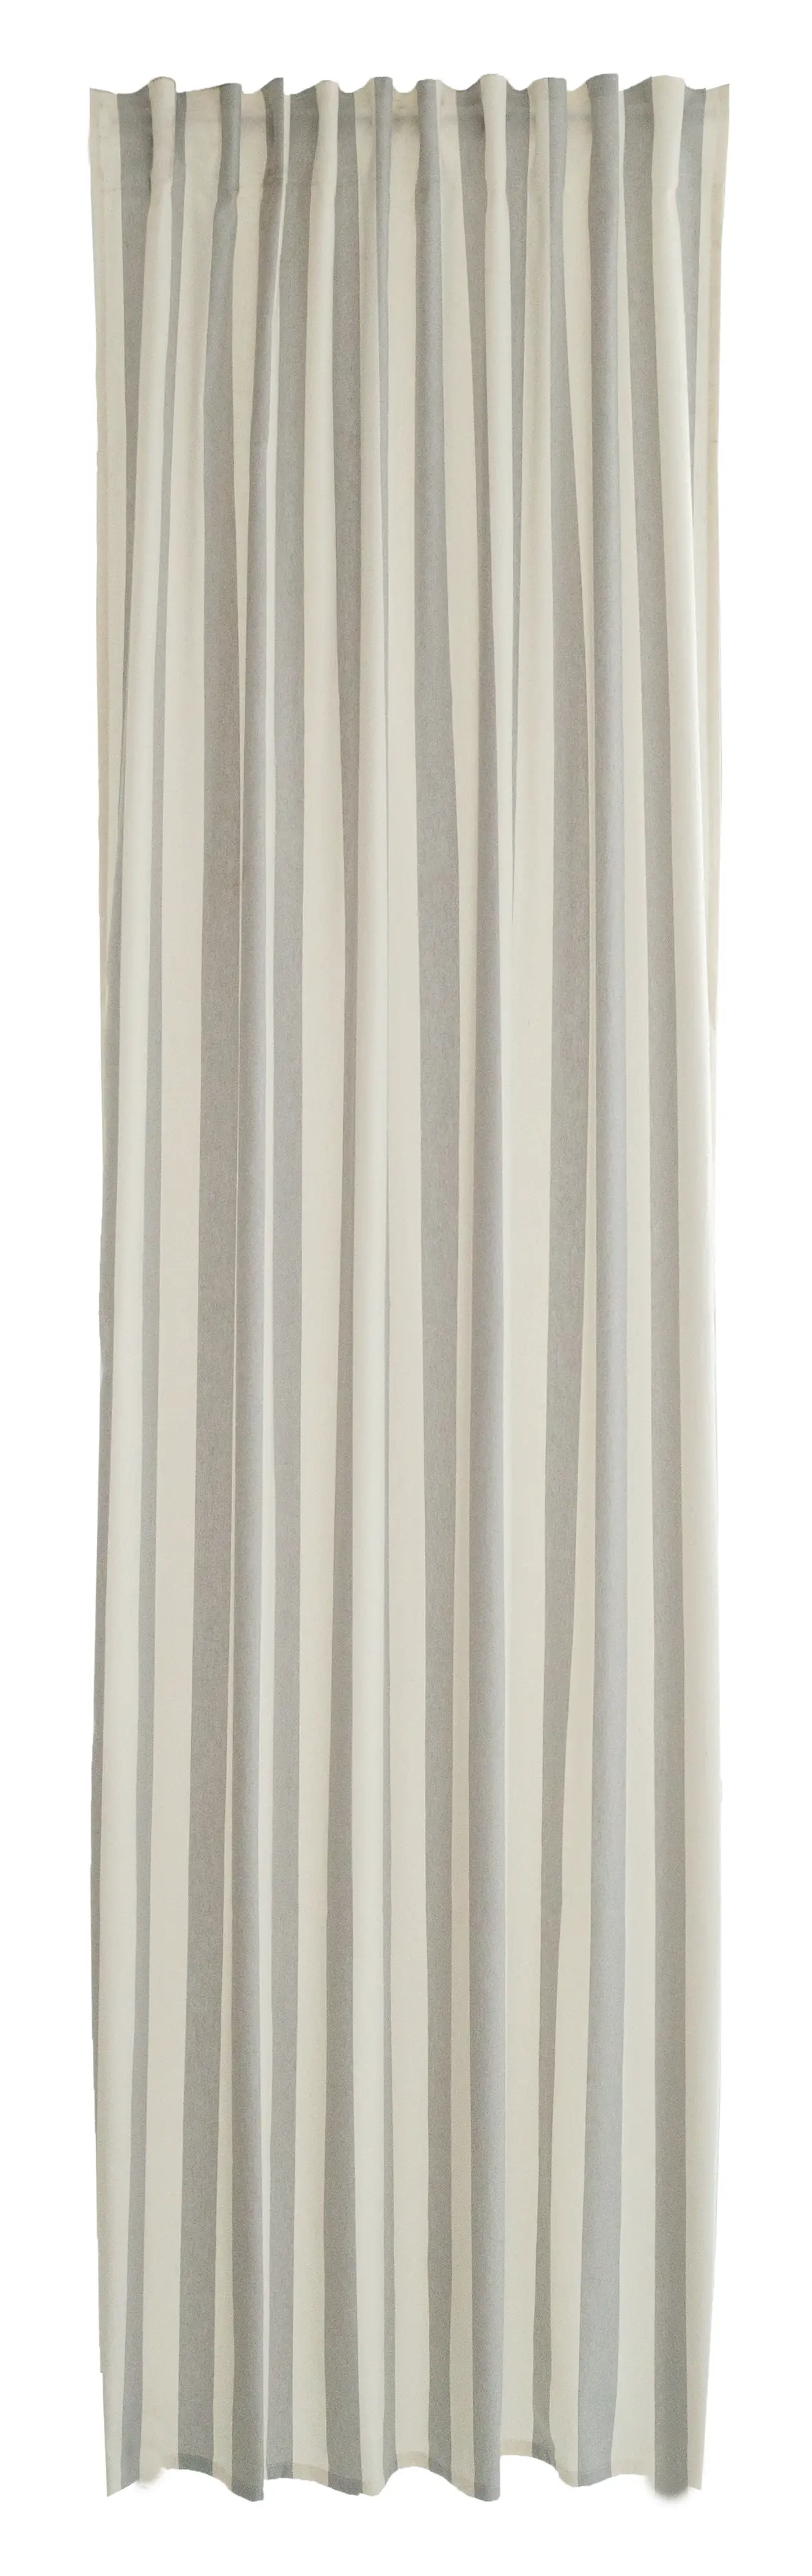 Vorhang baumwolle grau-beige streifen